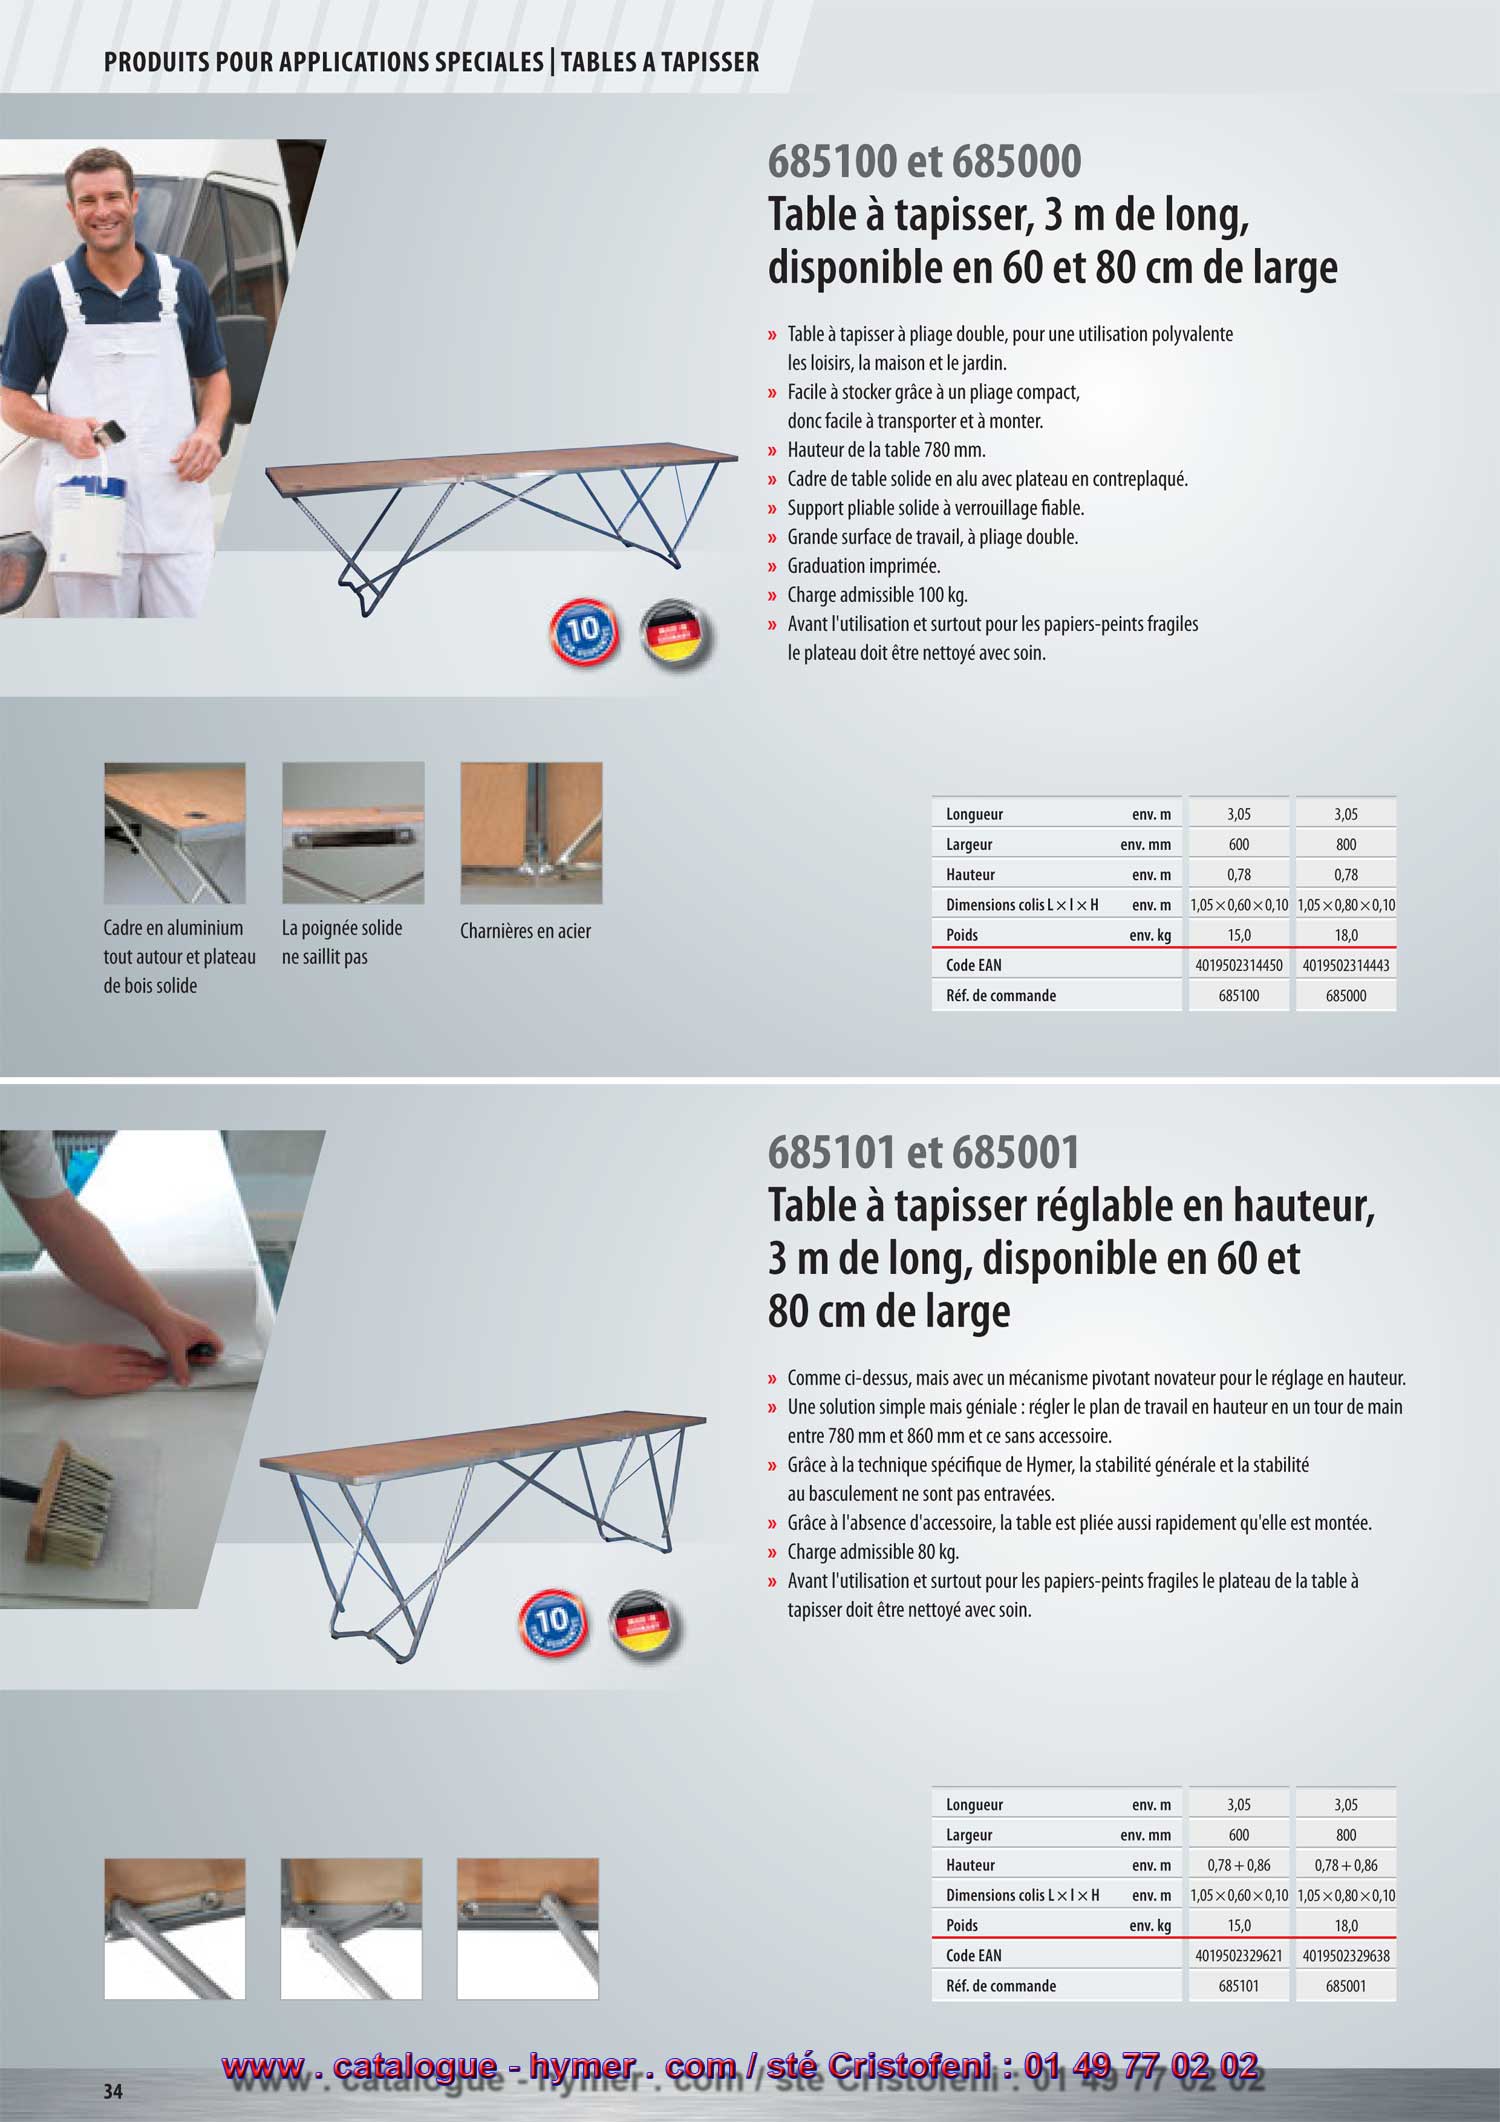 p 34 table a tapisser 3m longueur catalogue-hymer tableau PRIX